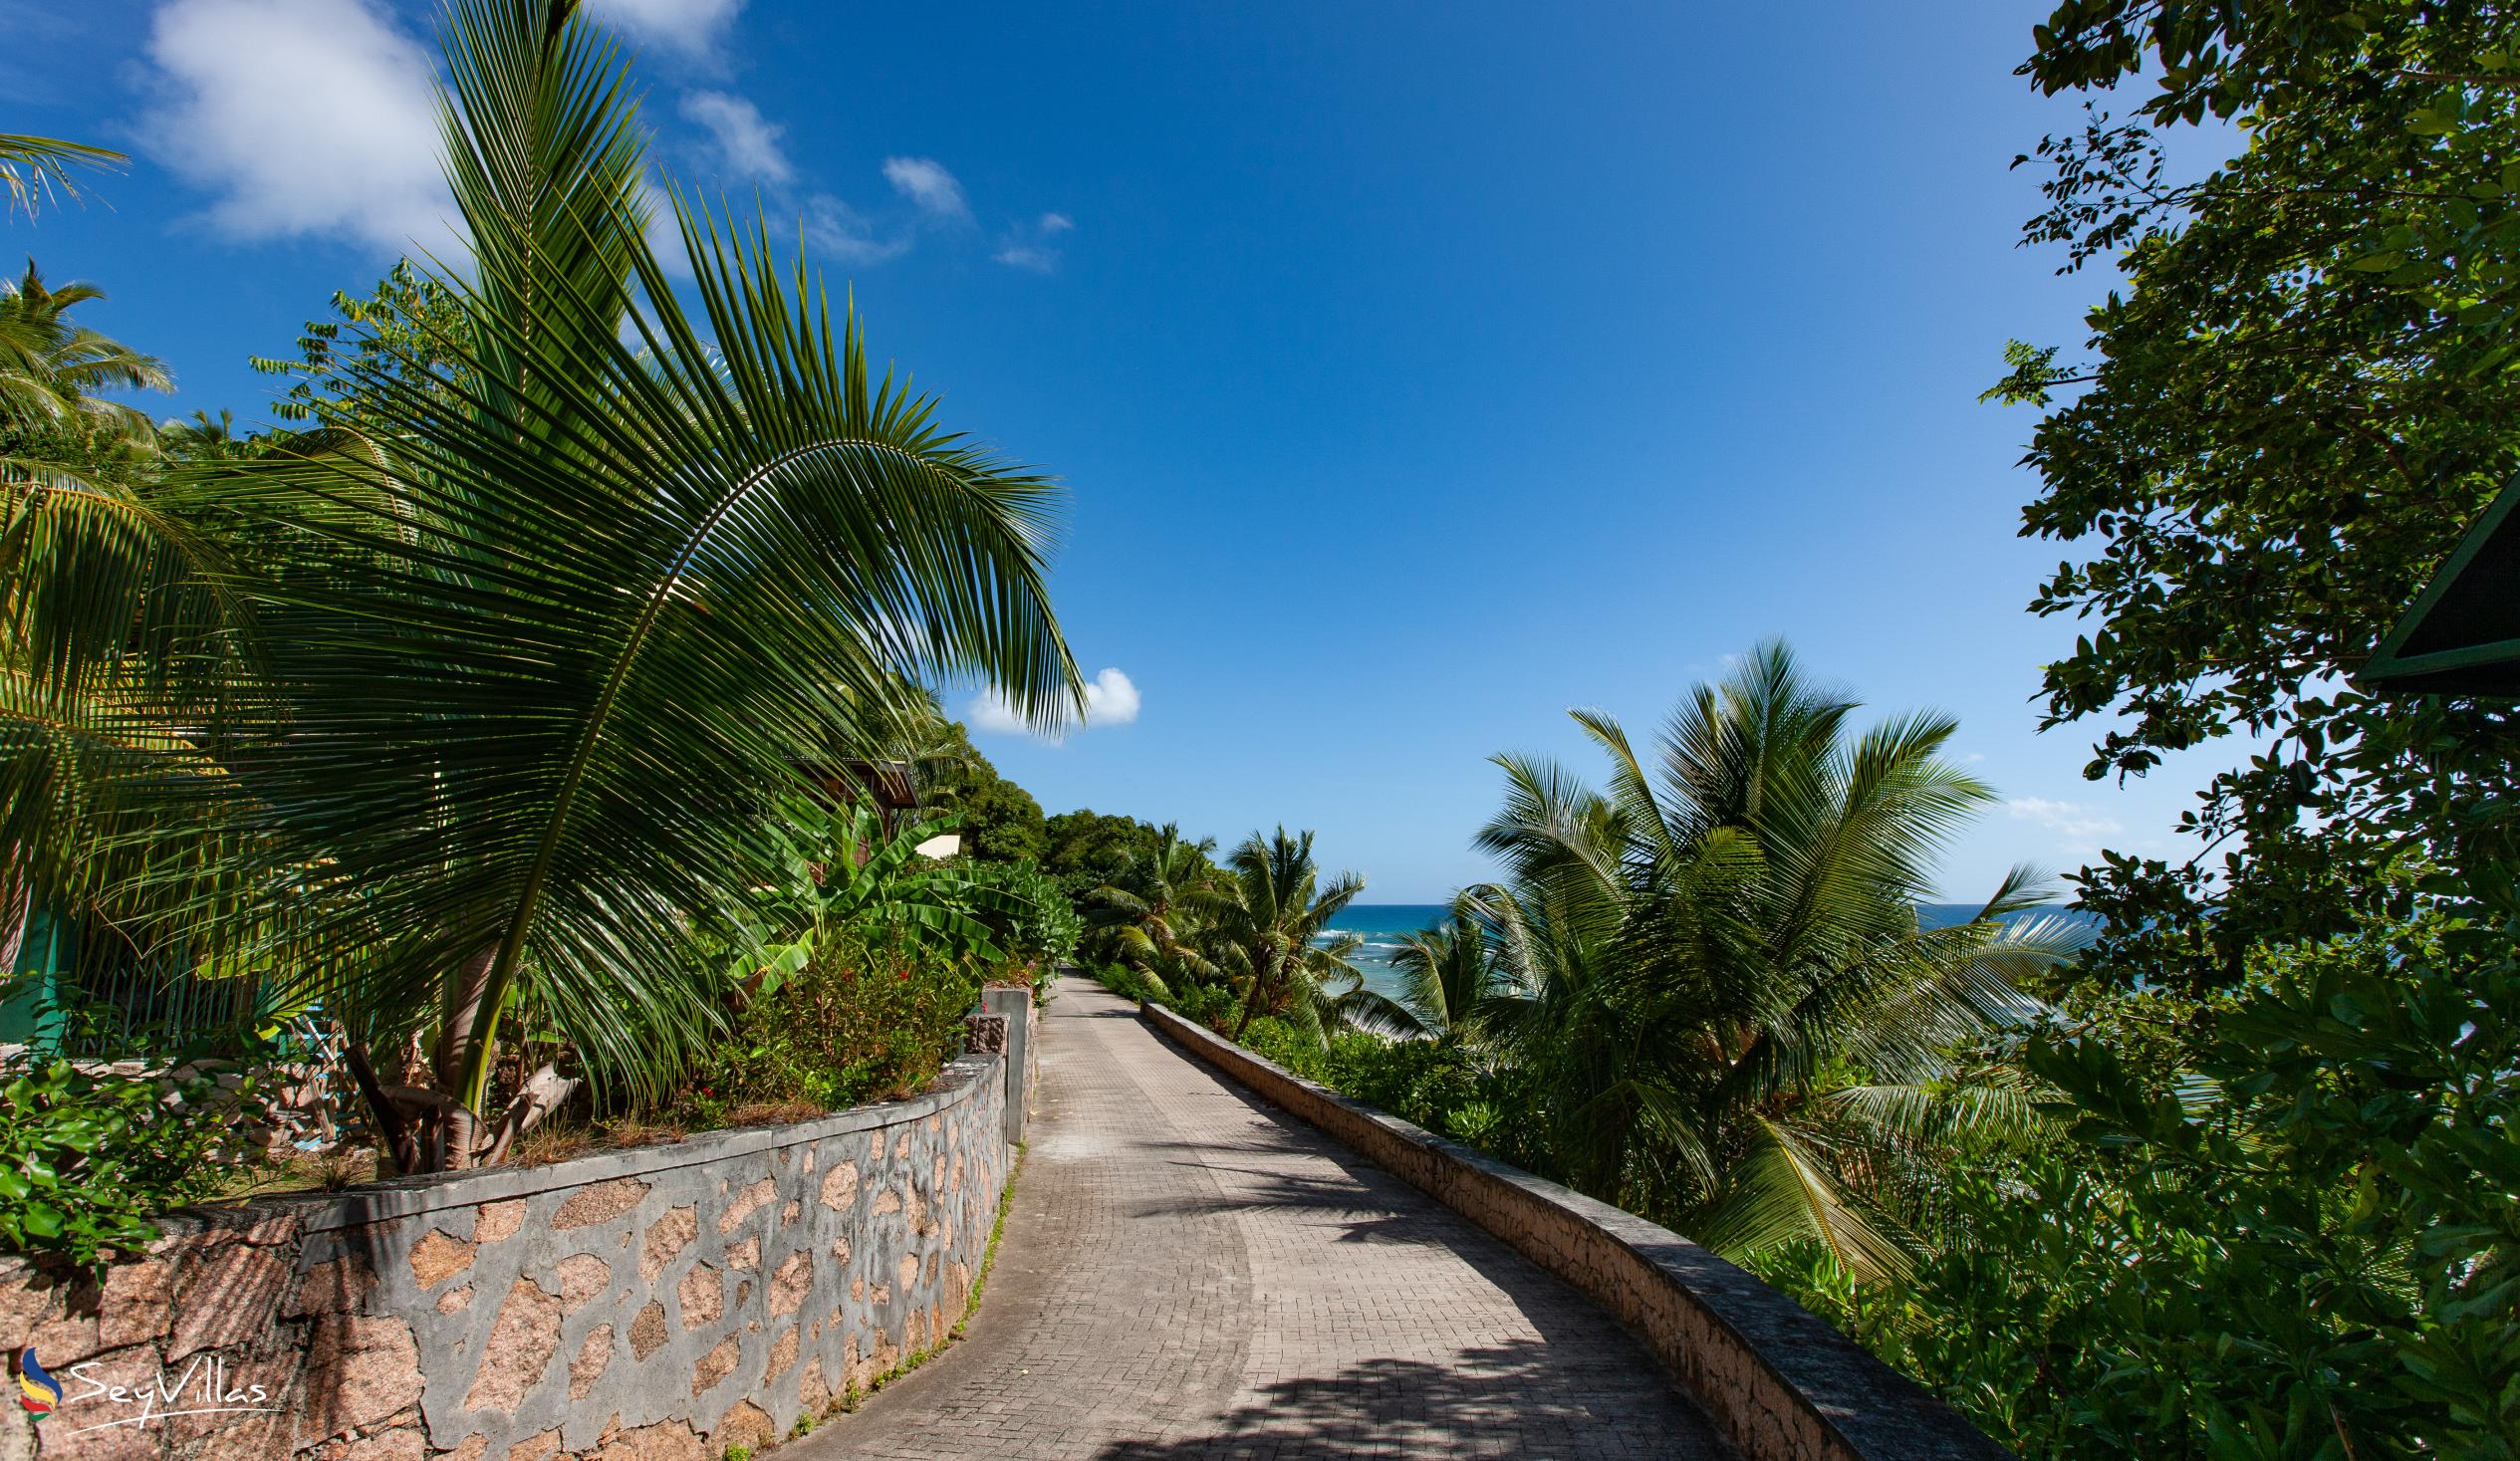 Photo 26: Lakaz An Bwa - Location - La Digue (Seychelles)